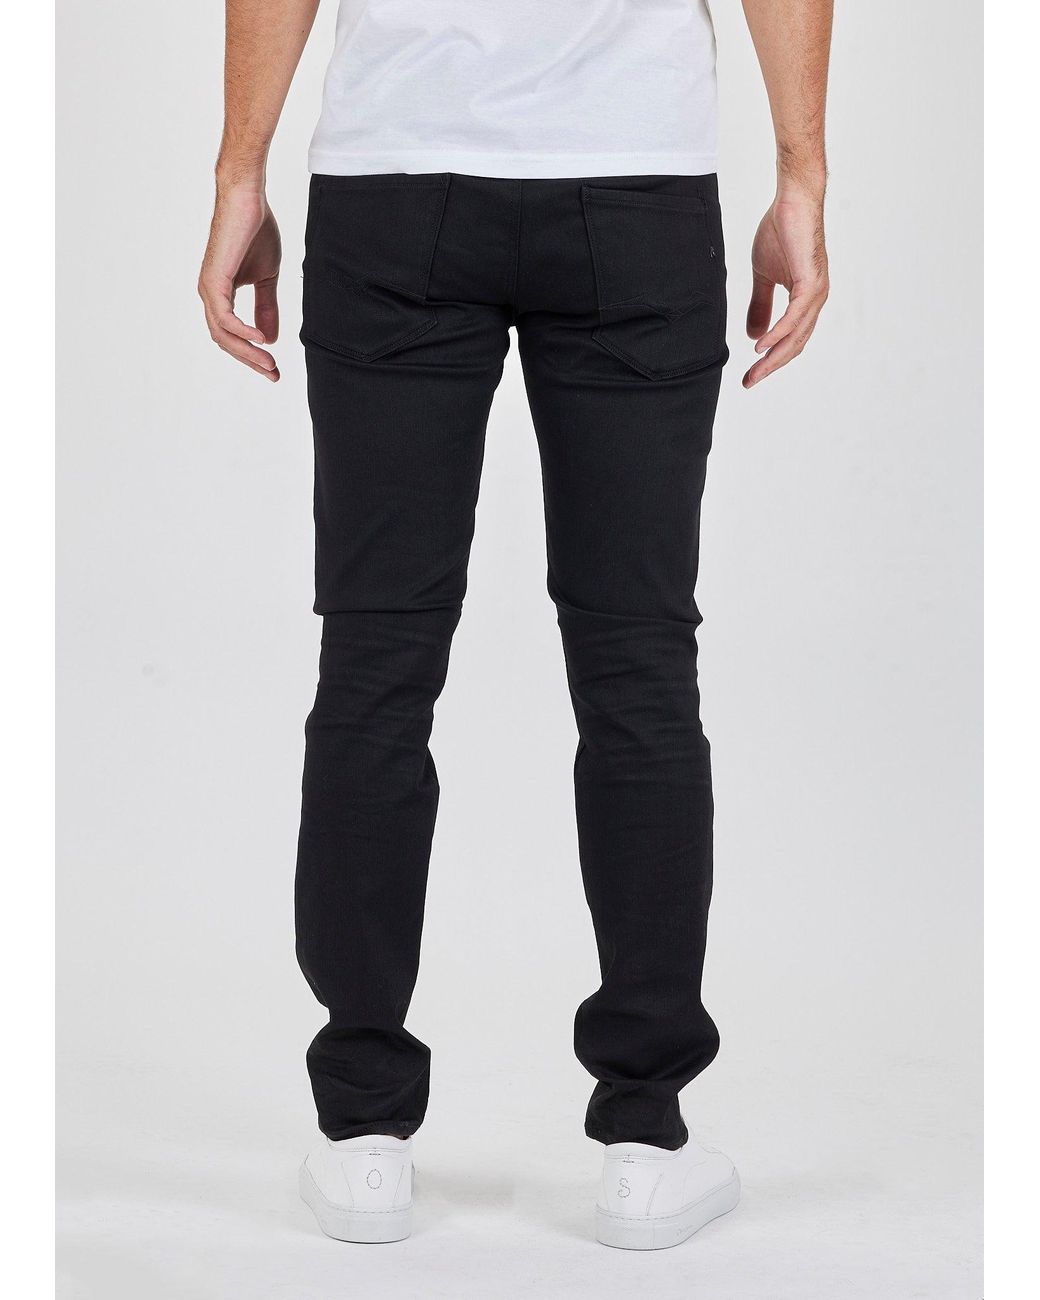 Replay Denim Hyperflex Reused Jeans in Black for Men - Save 7% | Lyst